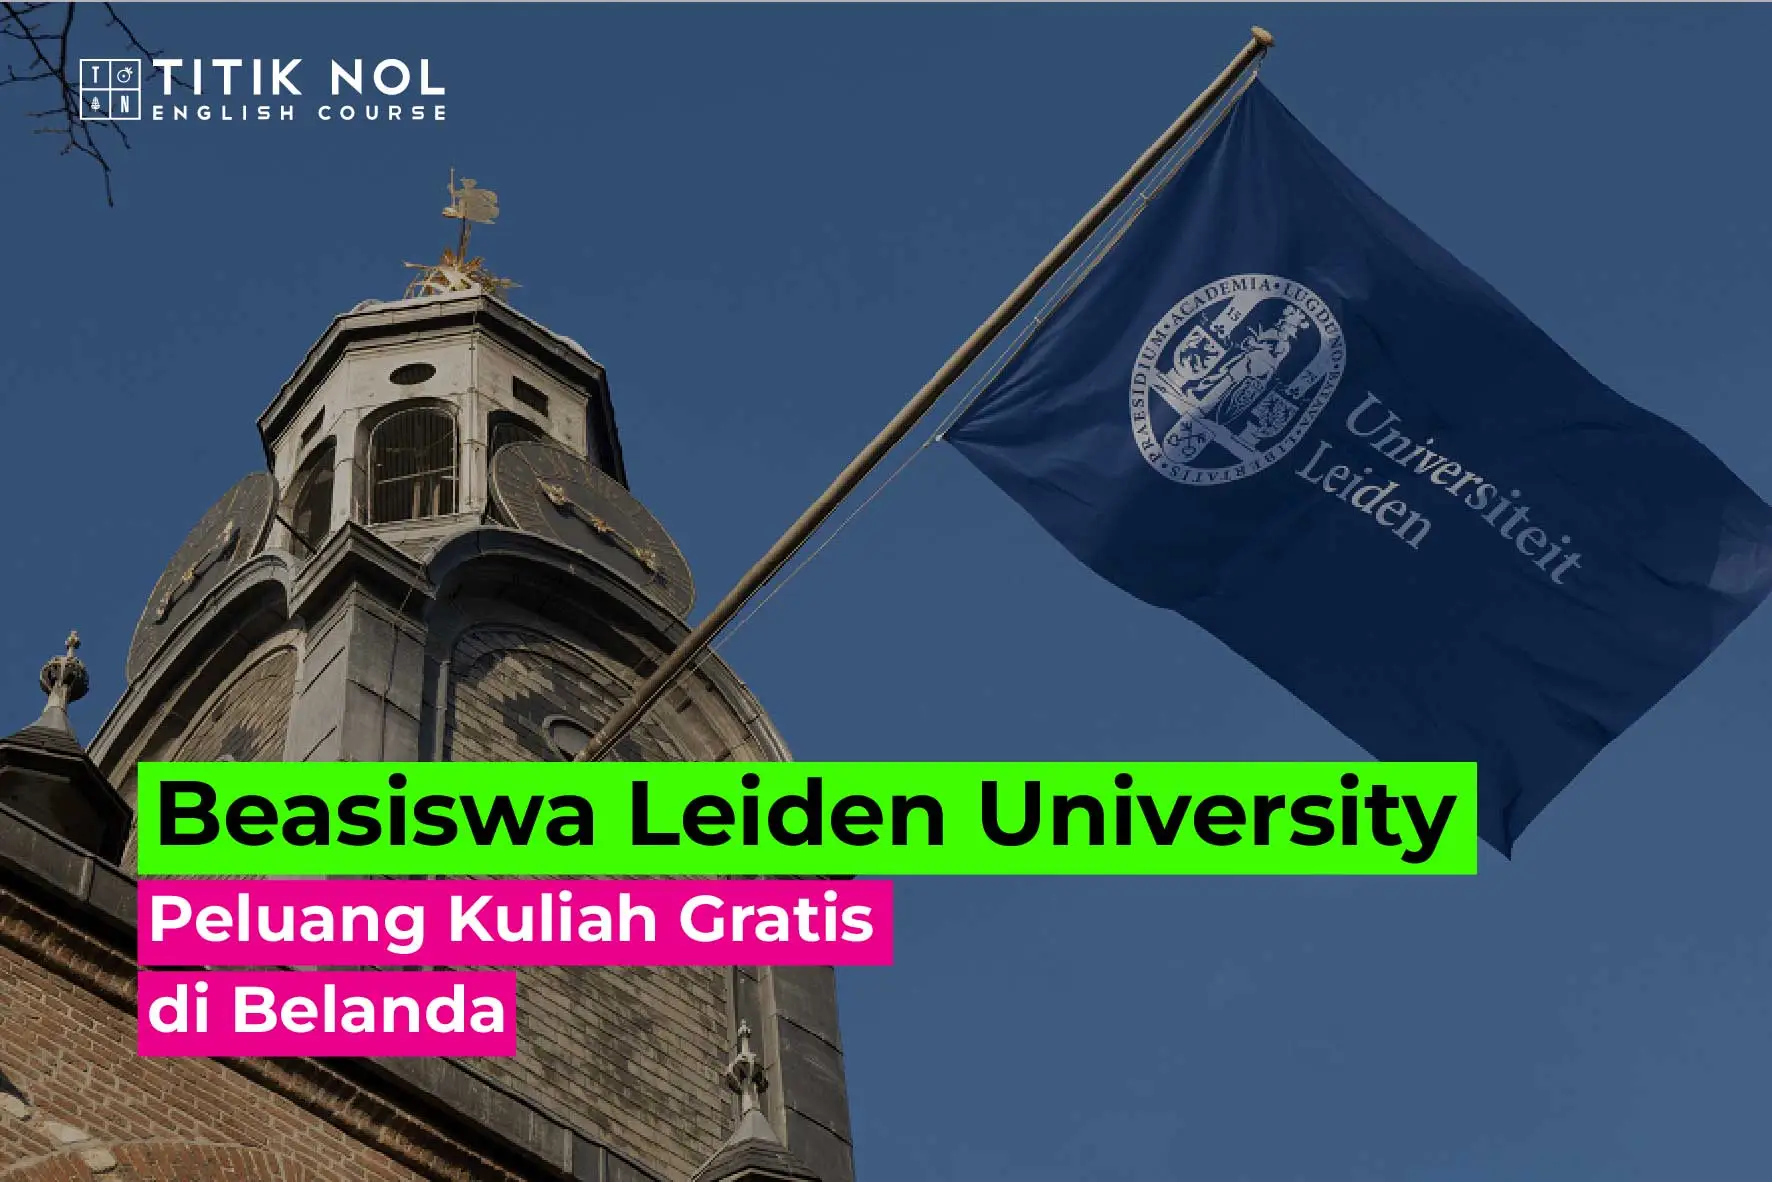 Beasiswa Leiden University